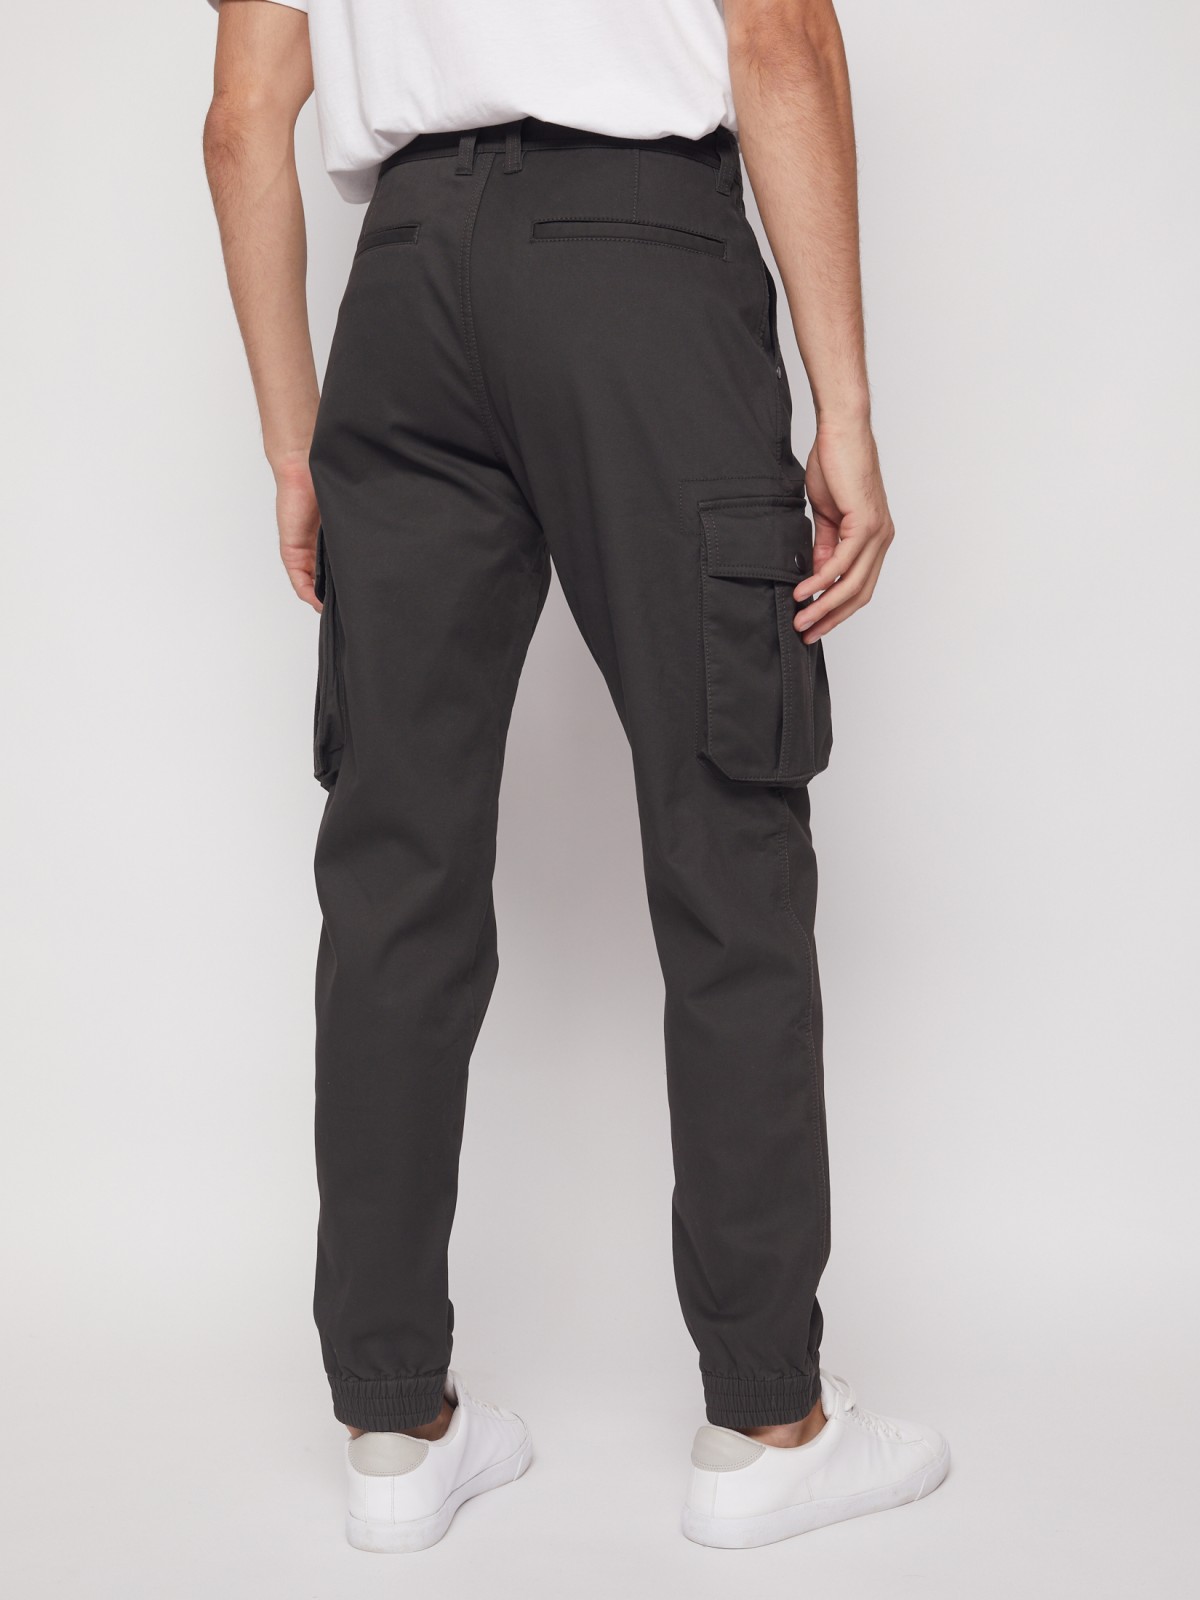 Хлопковые брюки-джоггеры с карманами карго zolla 21143730L021, цвет хаки, размер 28 - фото 6